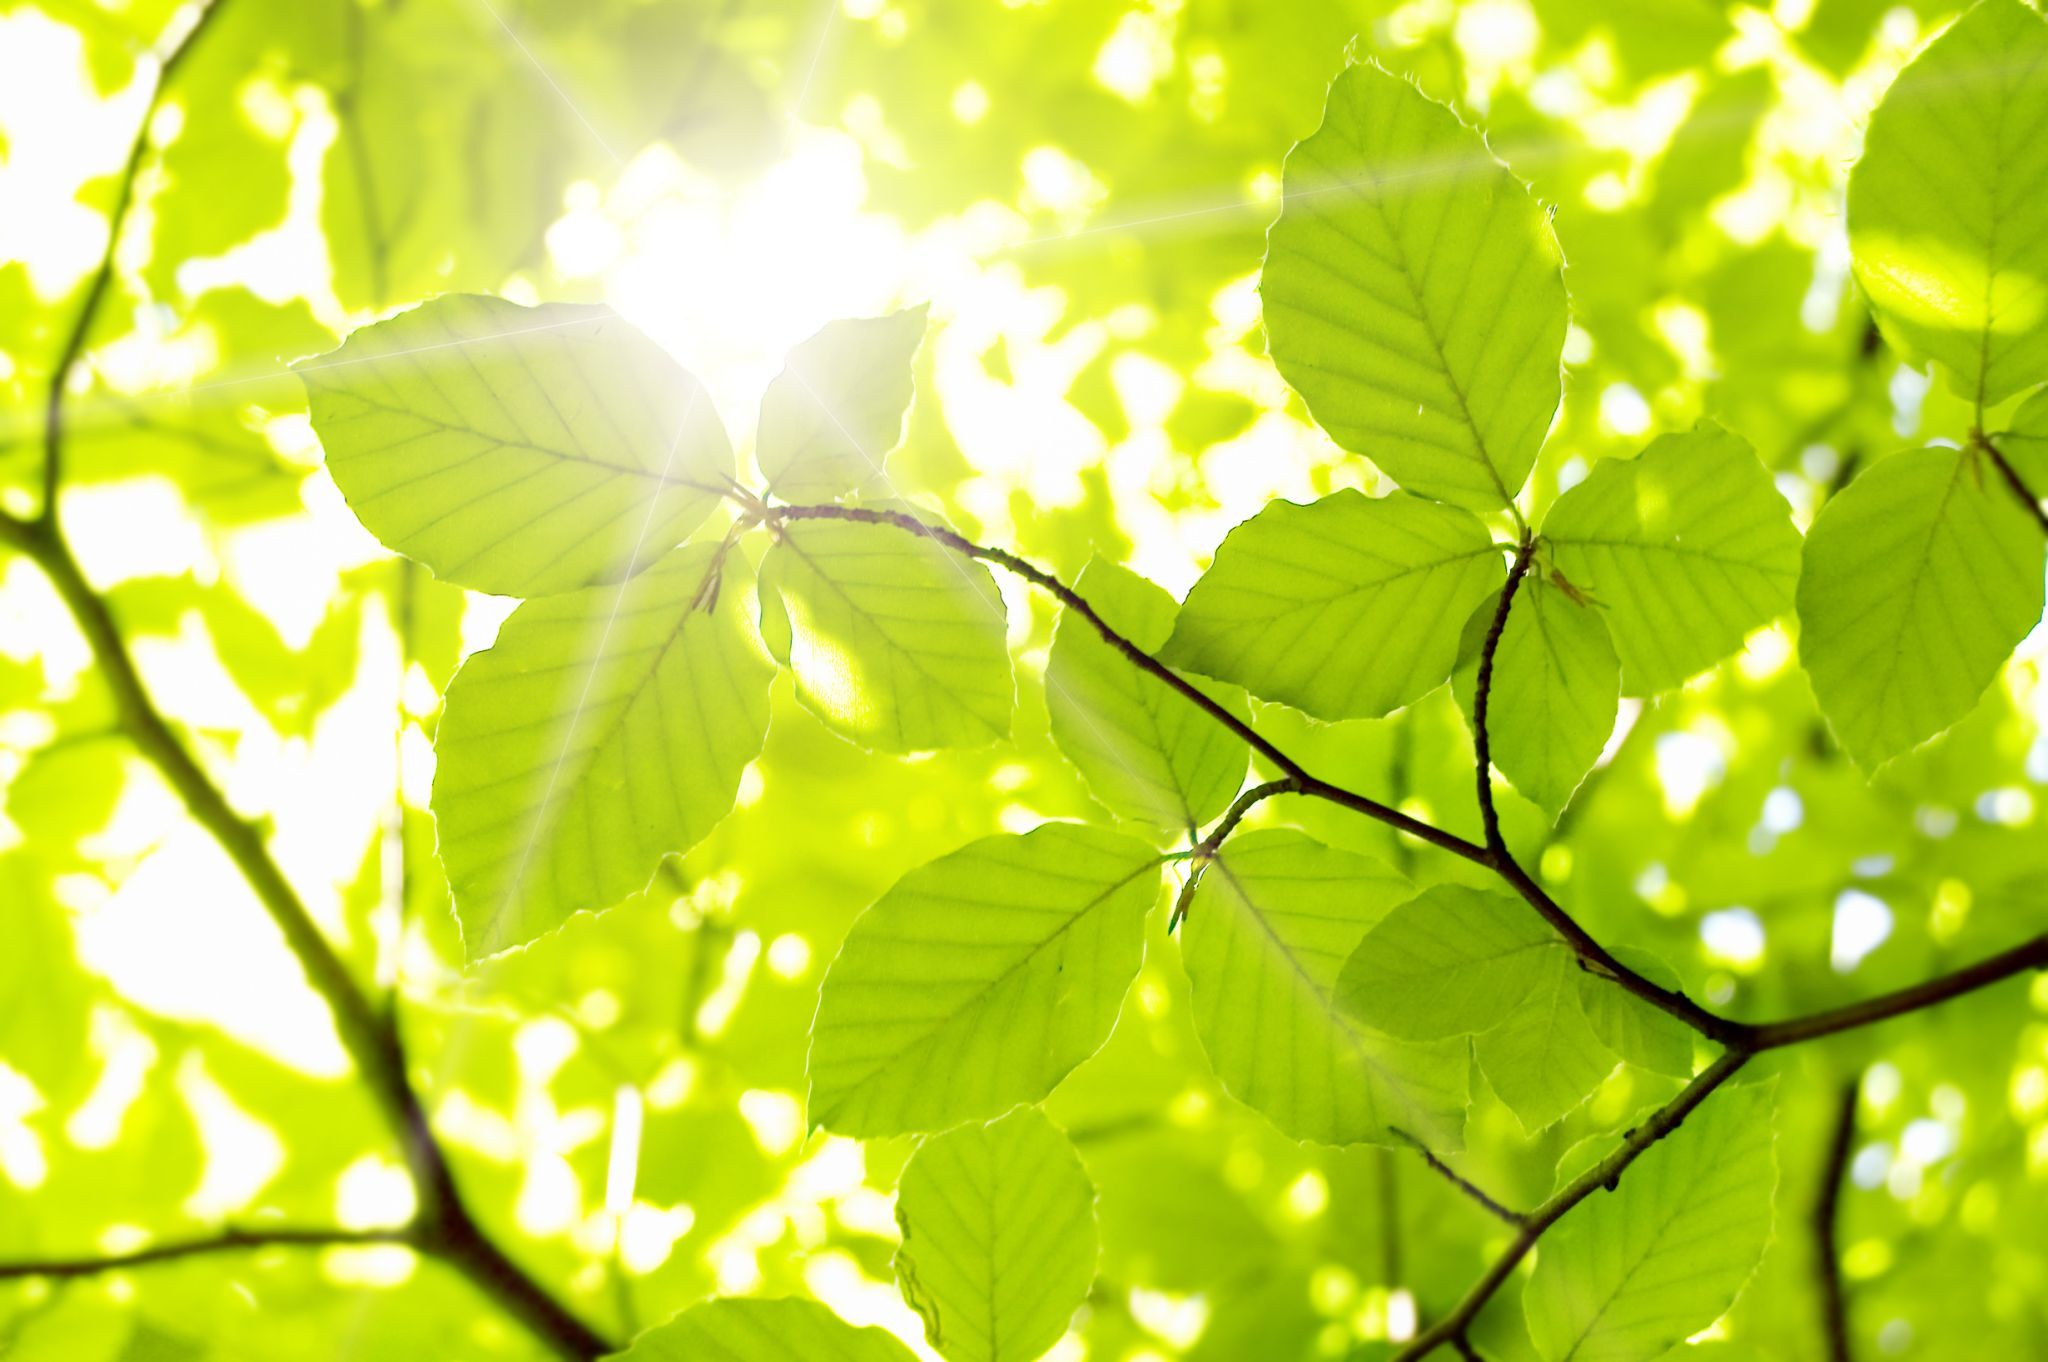 lumière filtrant à travers des feuilles